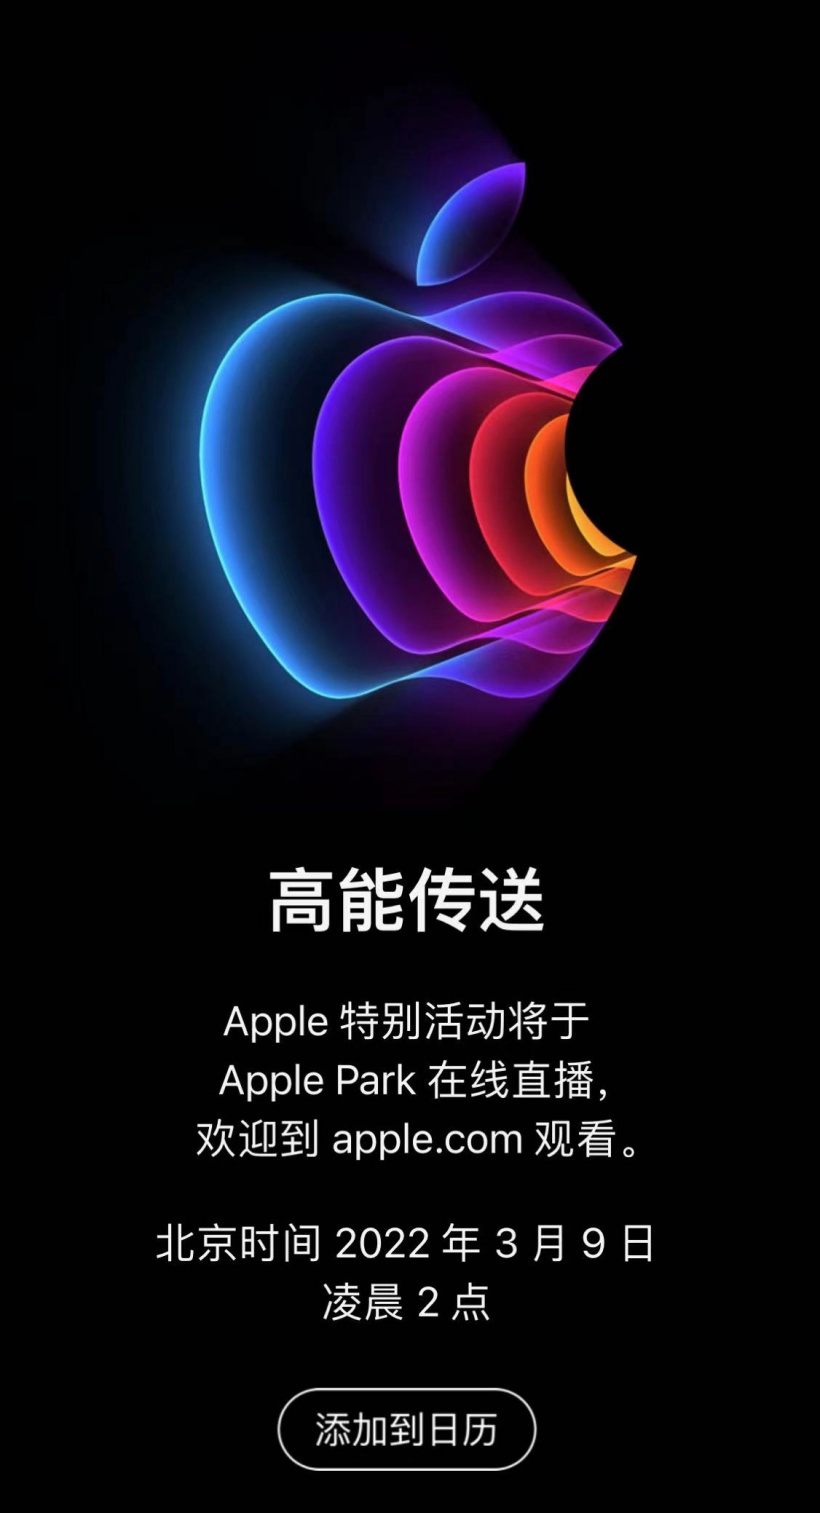 蘋果3月9日春季發布會:預計推下一代iPhone SE、配備M2芯片的Mac、iOS更新